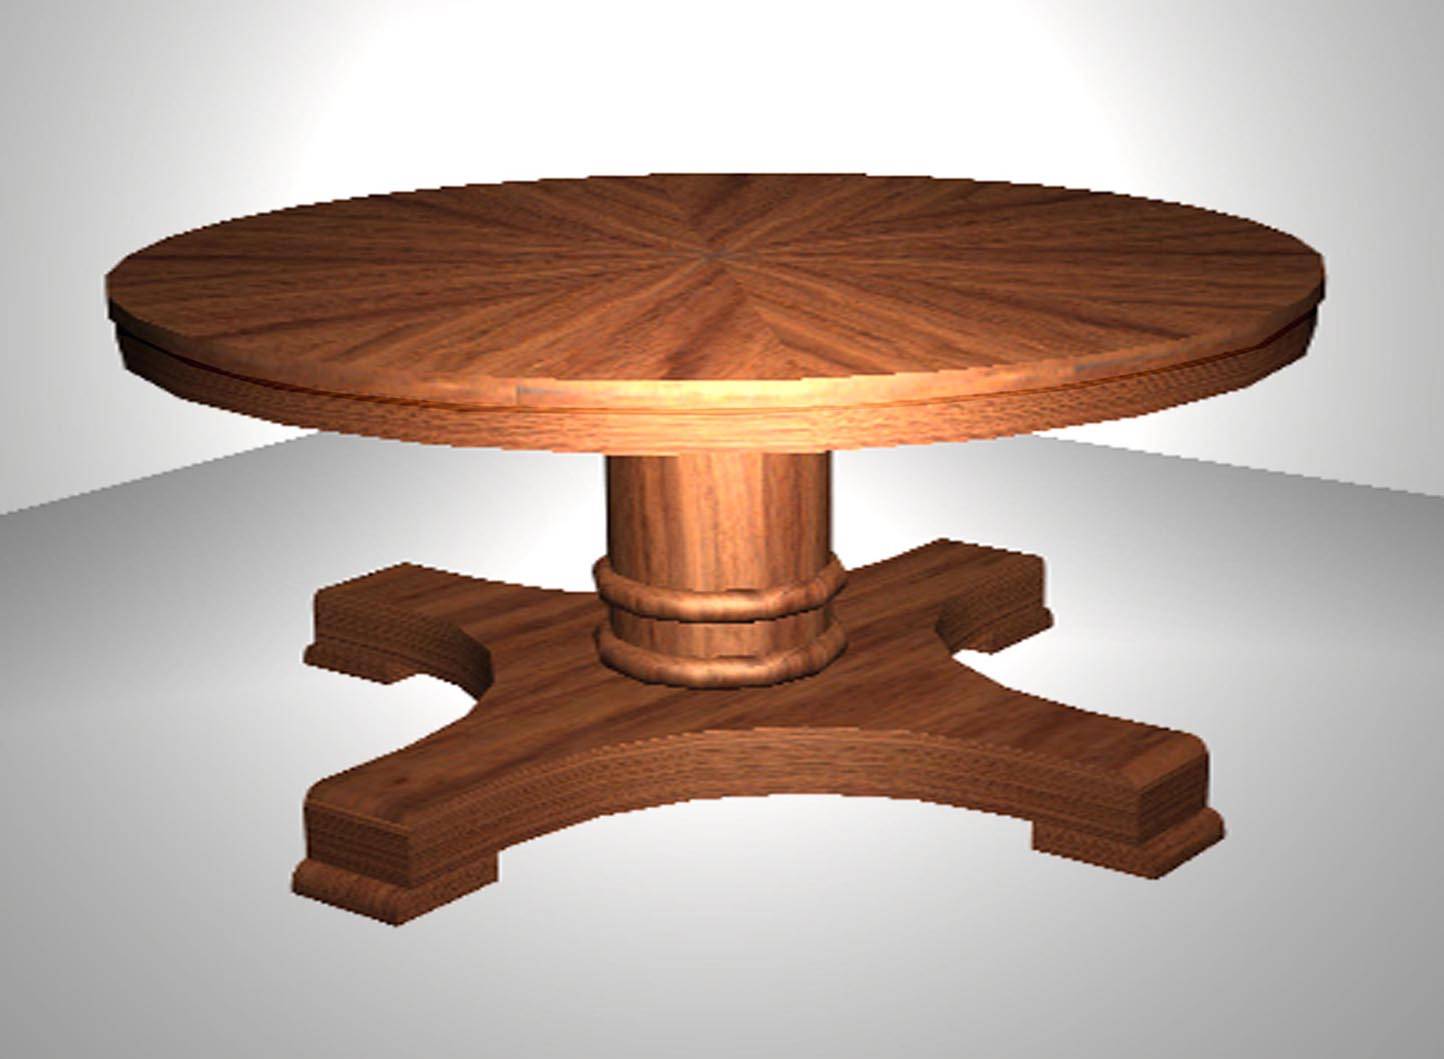 Описание круглого стола. Круглый деревянный стол. Столик круглый. Круглый вращающийся стол. Круглый стол трансформер.